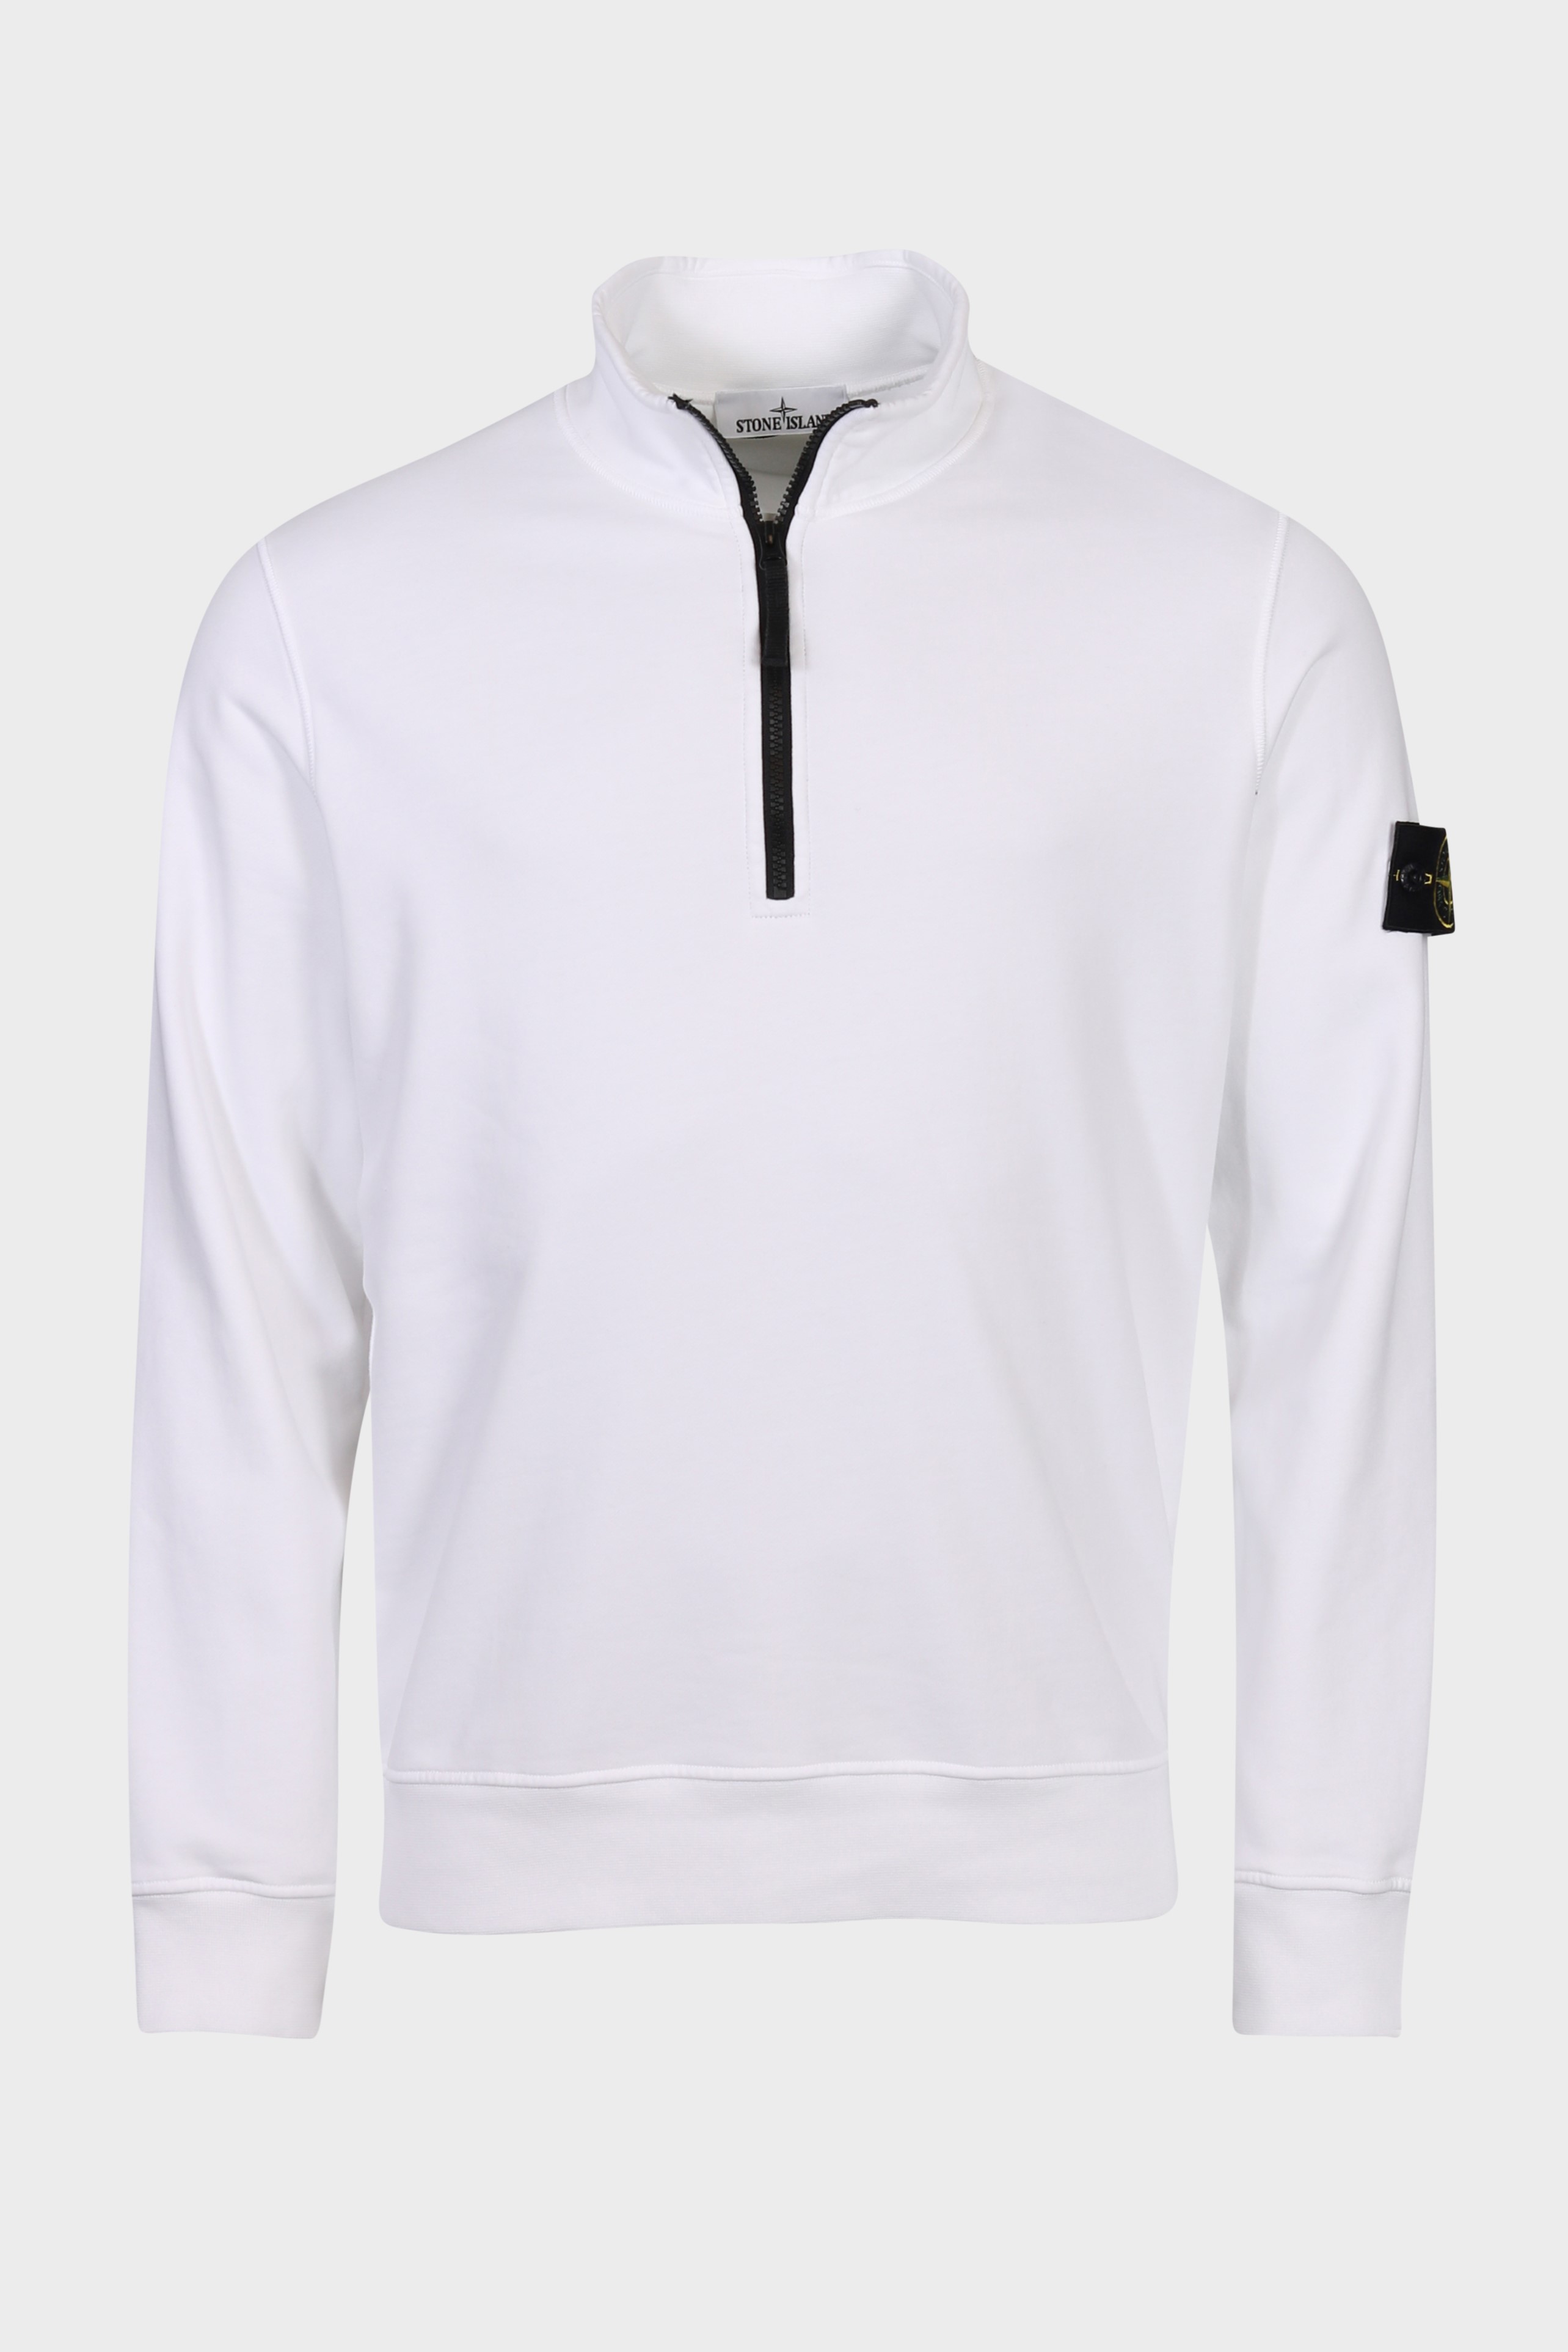 STONE ISLAND Half Zip Sweatshirt in White S